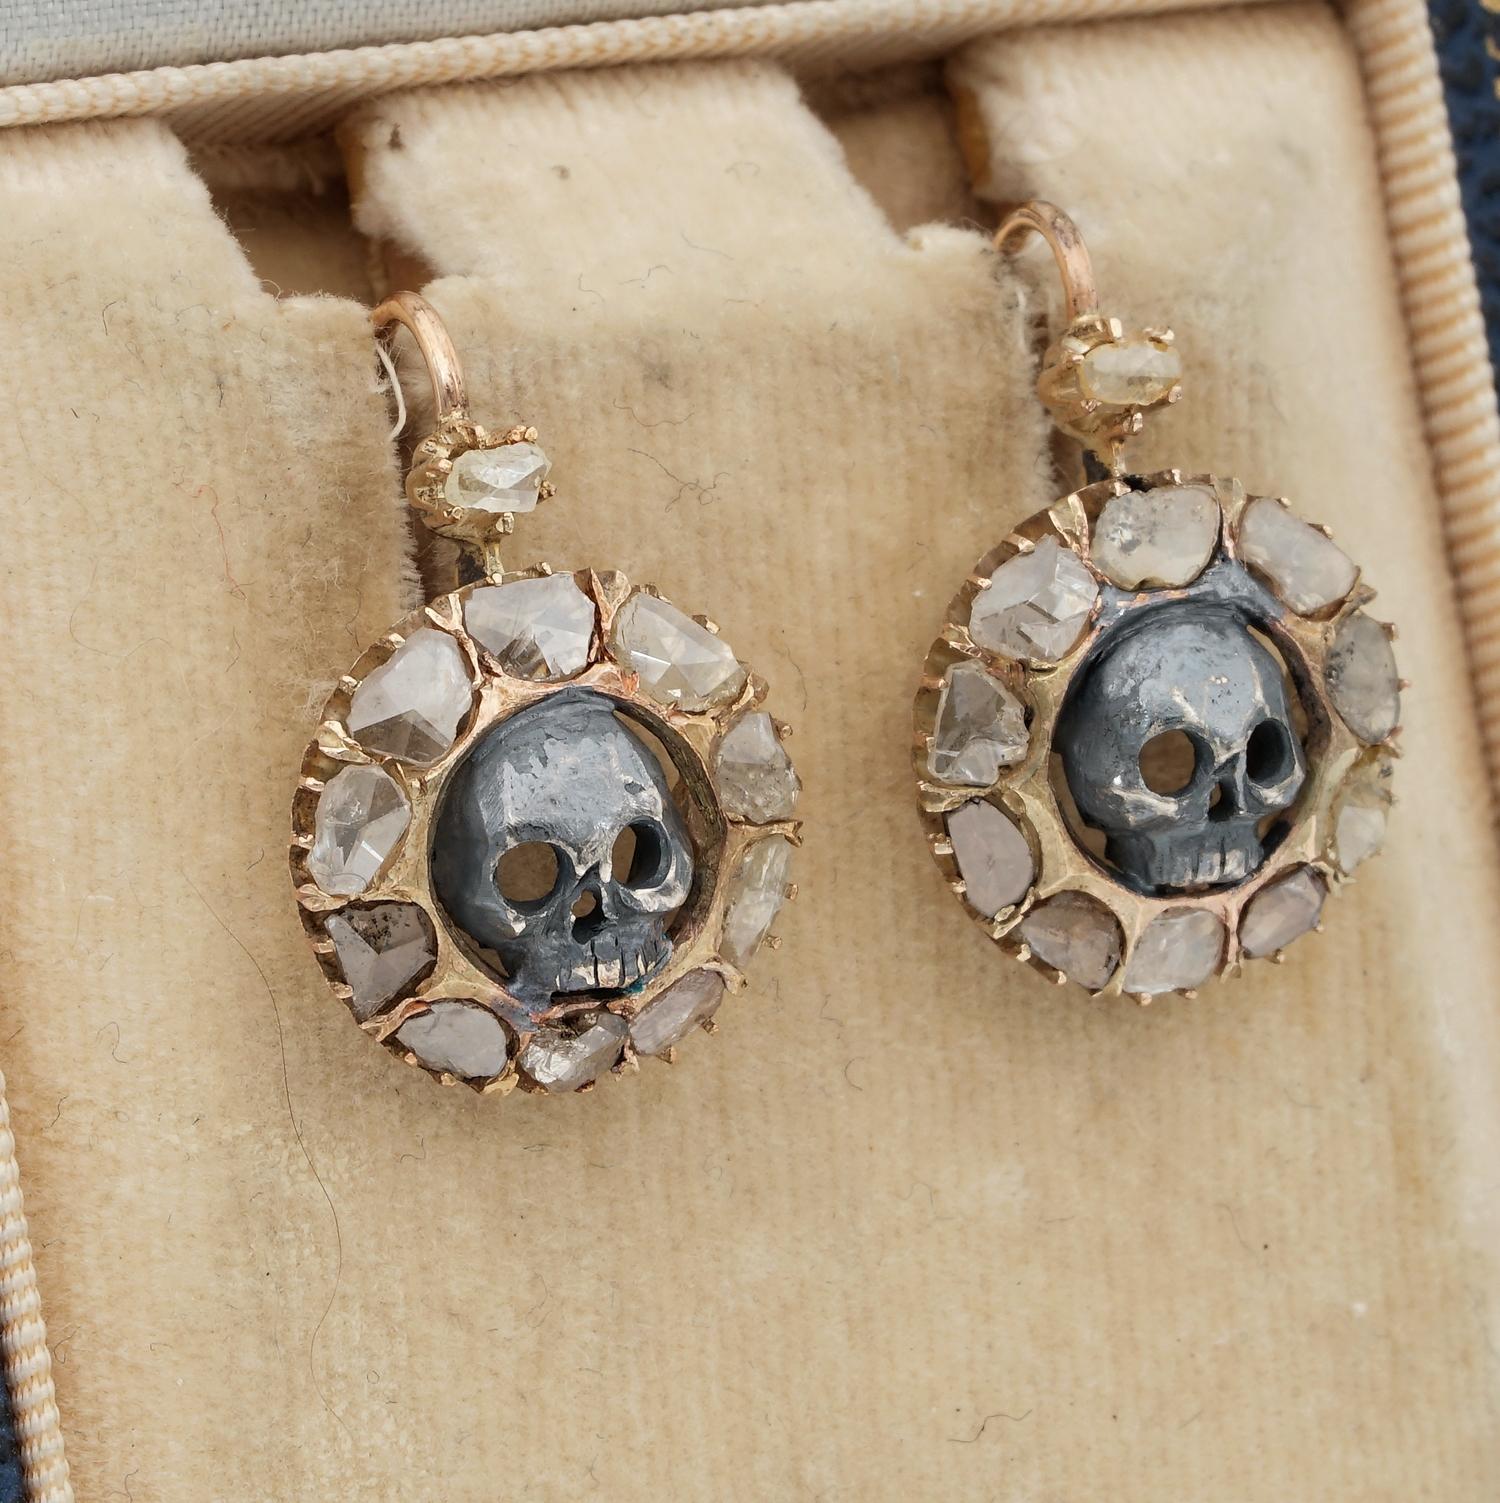 Victorian Unusual 2.30 Carat Flat Cut Diamond Memento Mori Skull Earrings